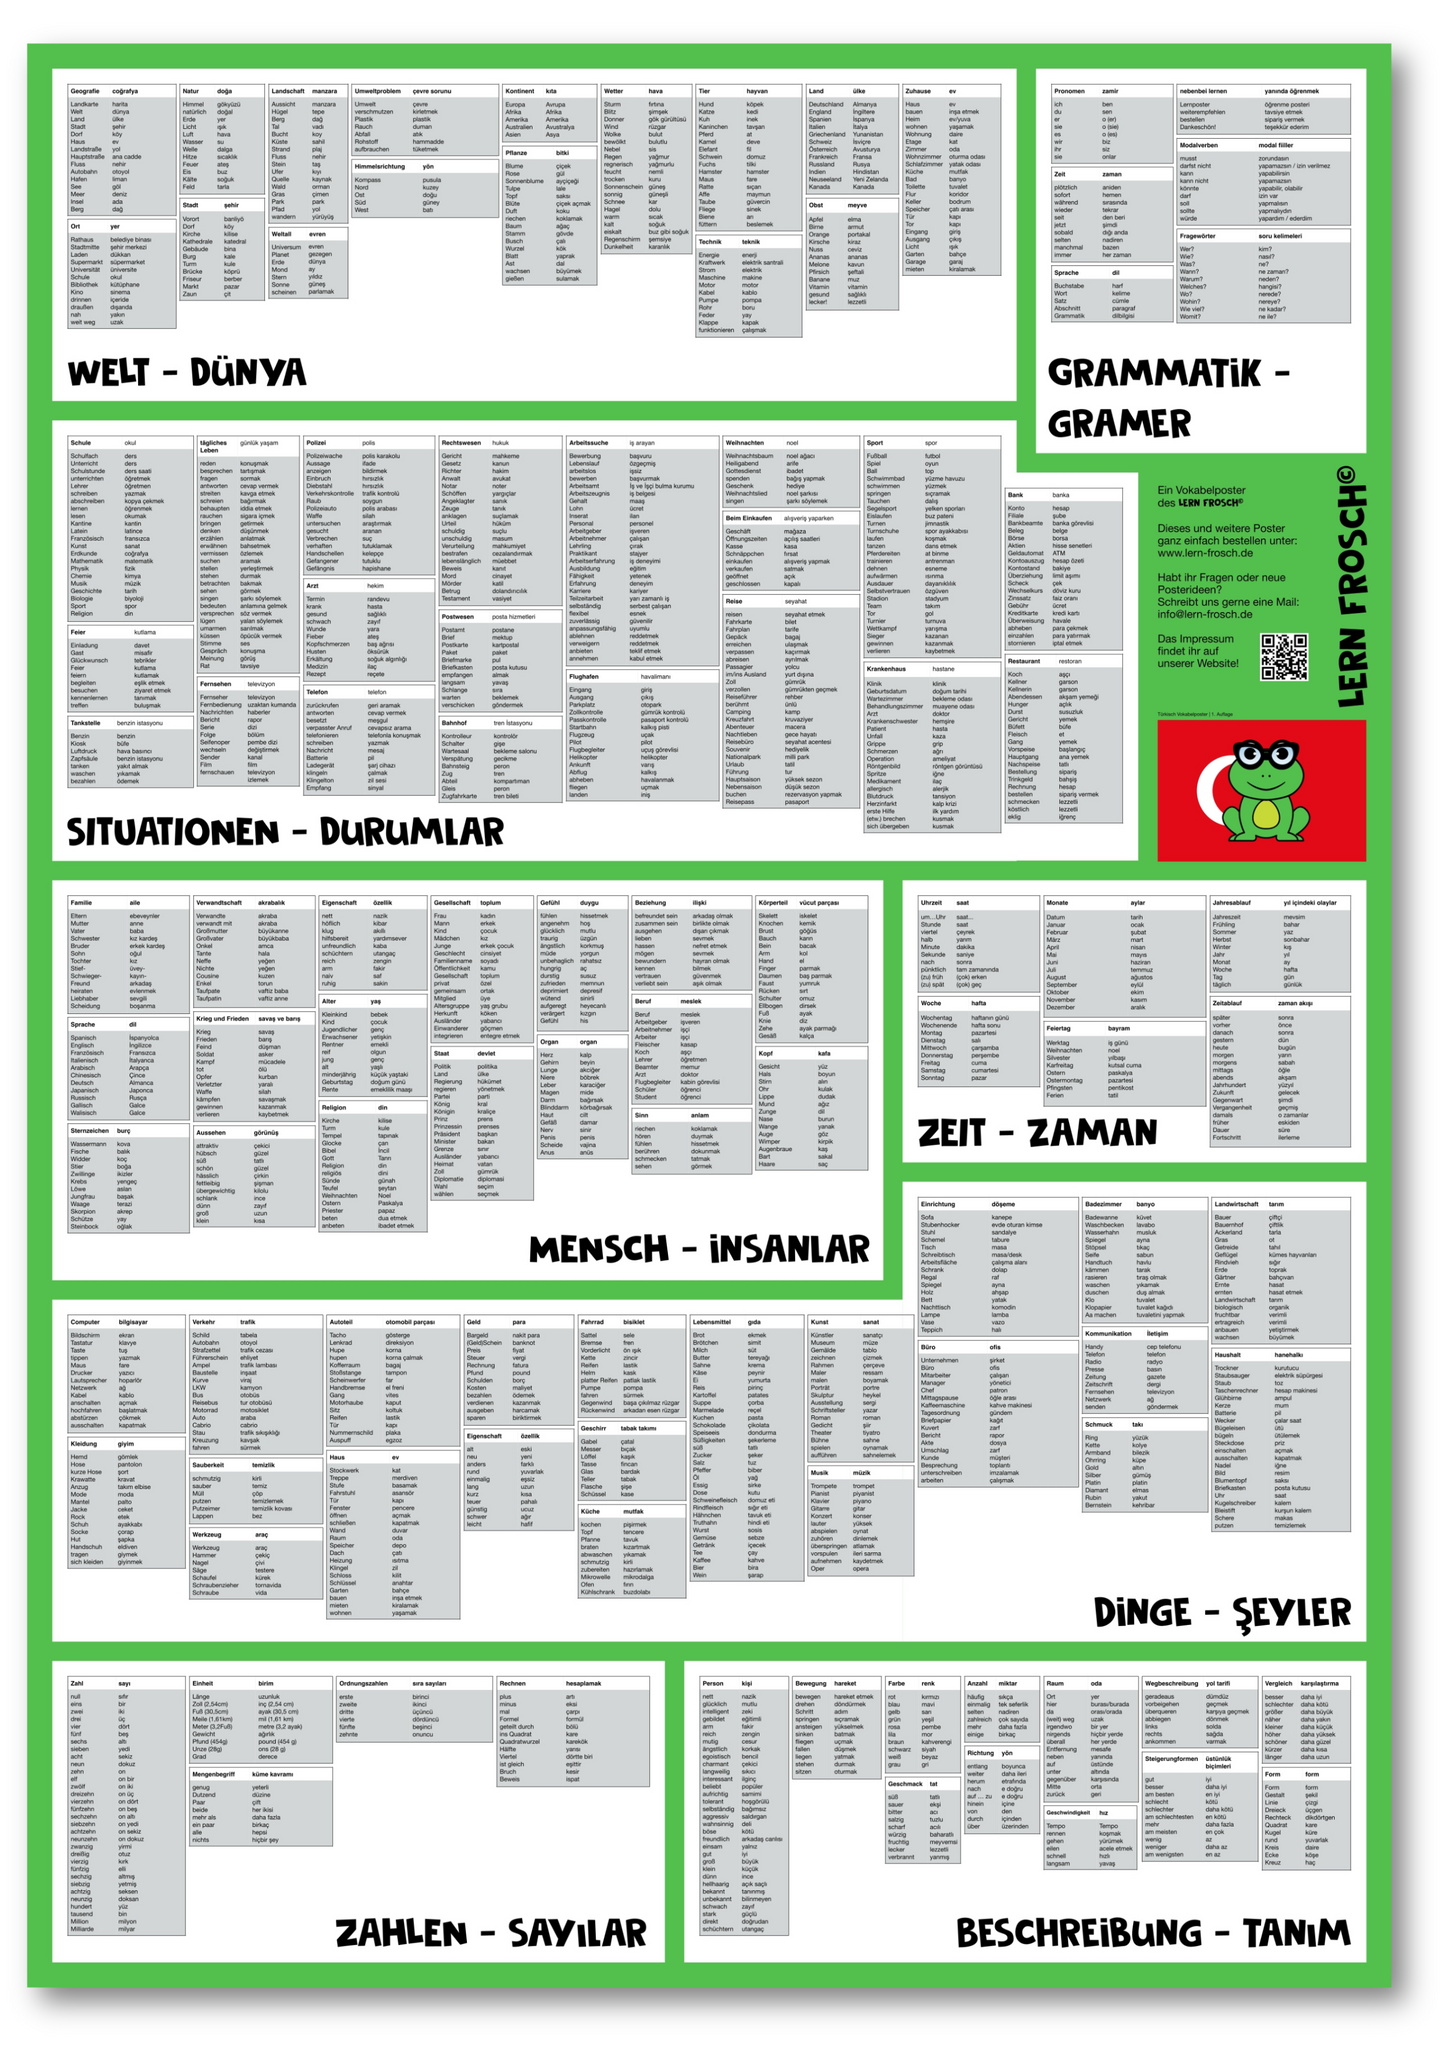 Lern Frosch® Türkisch häufigsten Wortschatz lernen | Vokabelposter für Anfänger & Fortgeschrittene | 1.500+ Vokabeln lernen